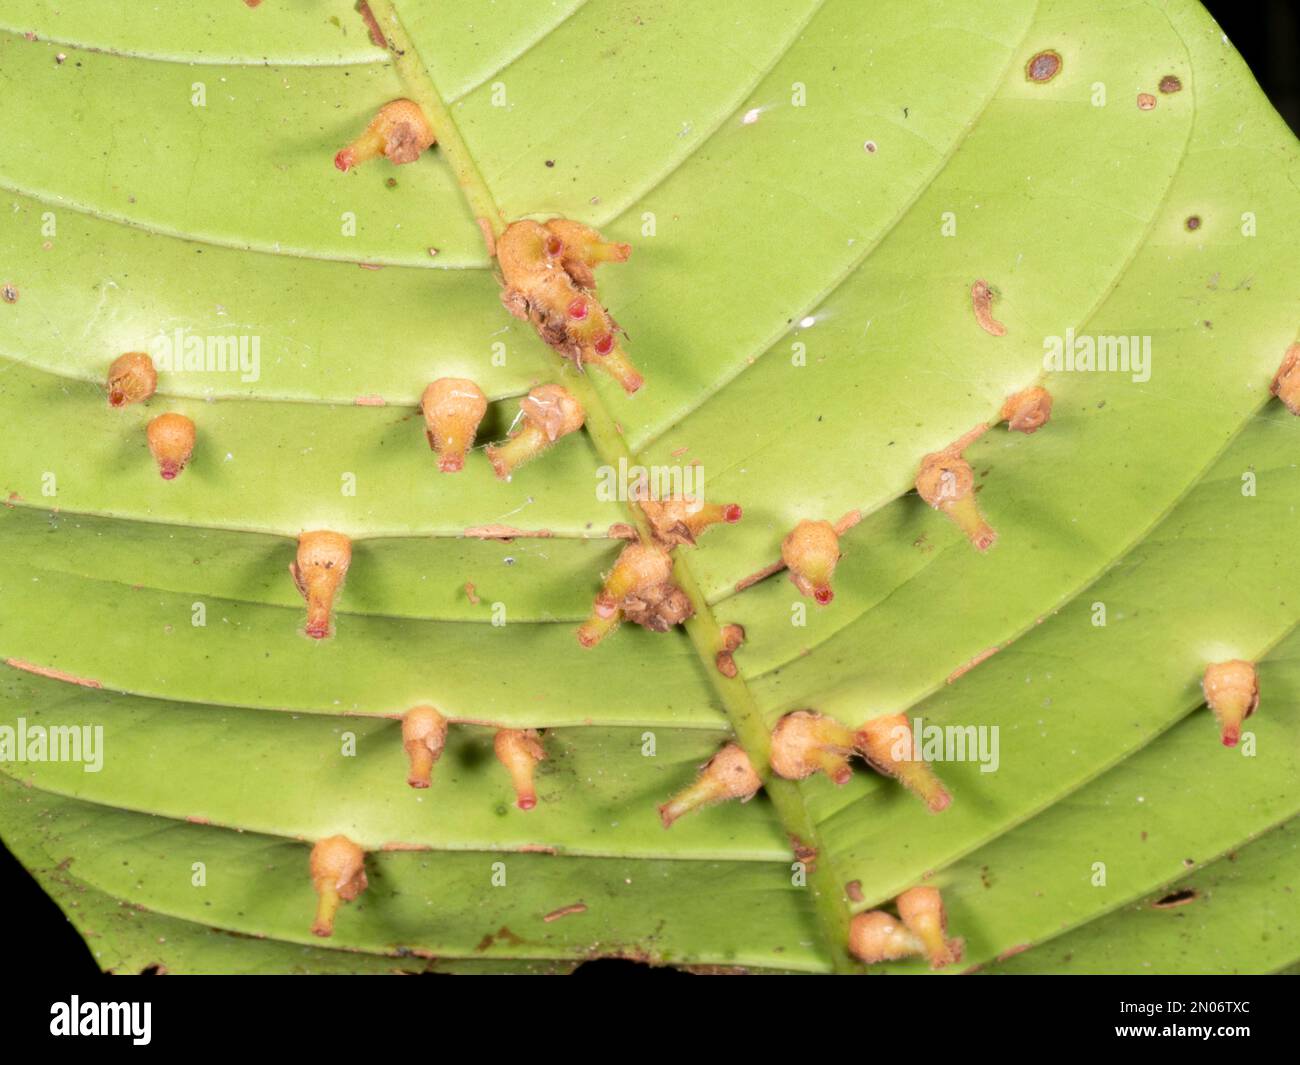 Hoja de un arbusto de sotobosque cubierto de agallas, resultante de un ataque de insectos, bacterias o hongos. Creciendo en la selva tropical en la provincia de Orellana, Ecuador Foto de stock